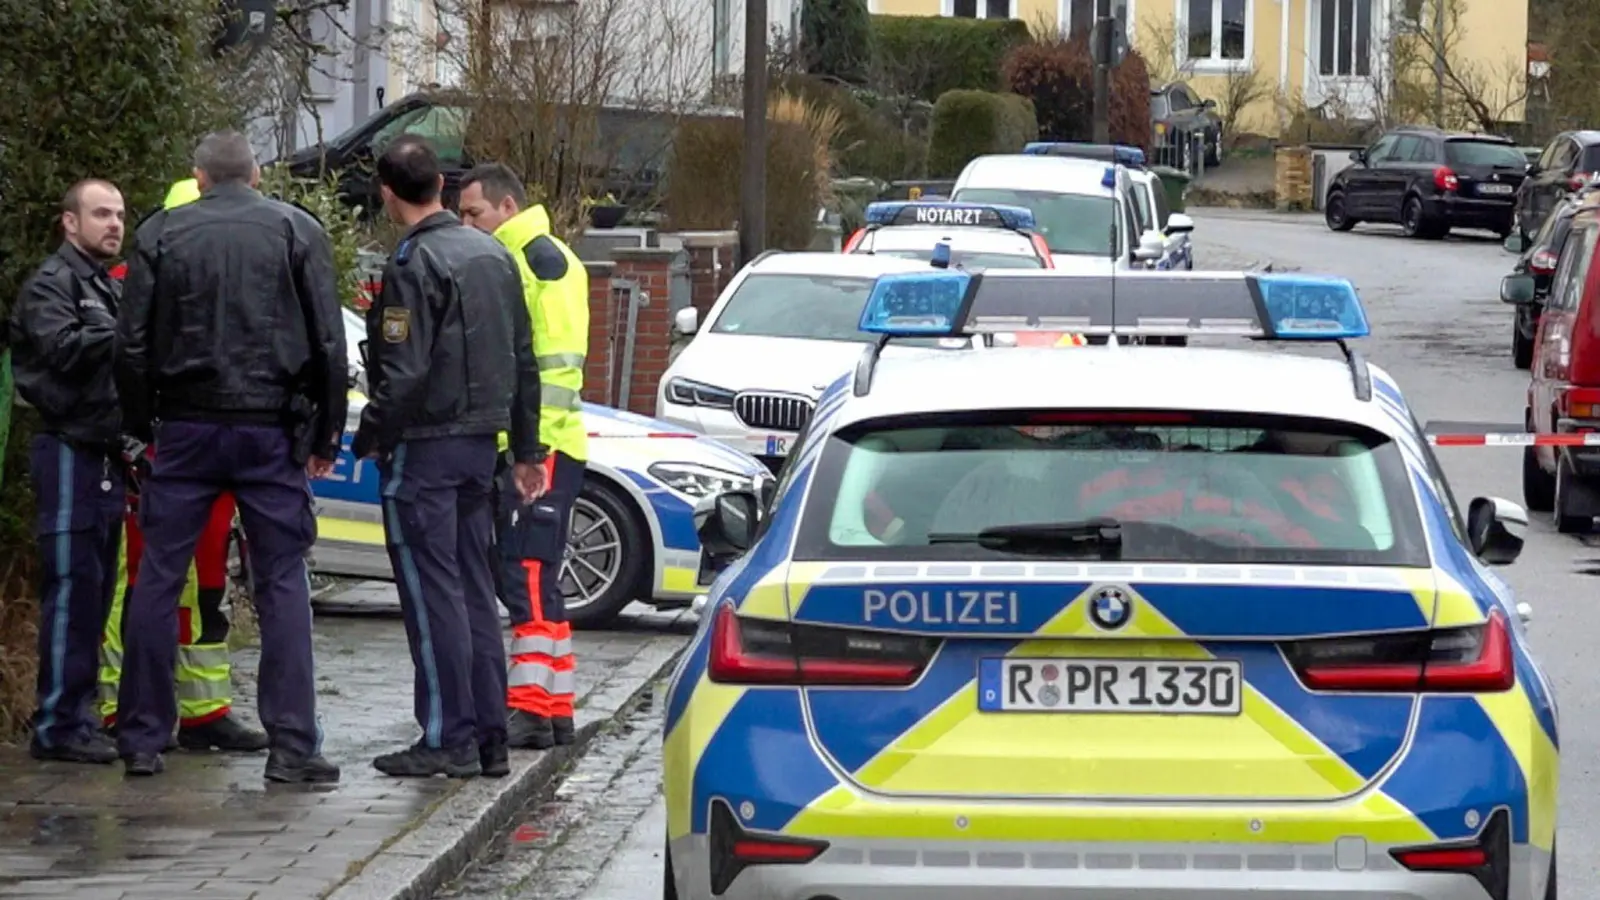 Polizei und Notarzt stehen vor dem Haus in Regensburg, in dem sich die Gewalttaten ereigneten. (Foto: Tiedemann/vifogra/dpa)